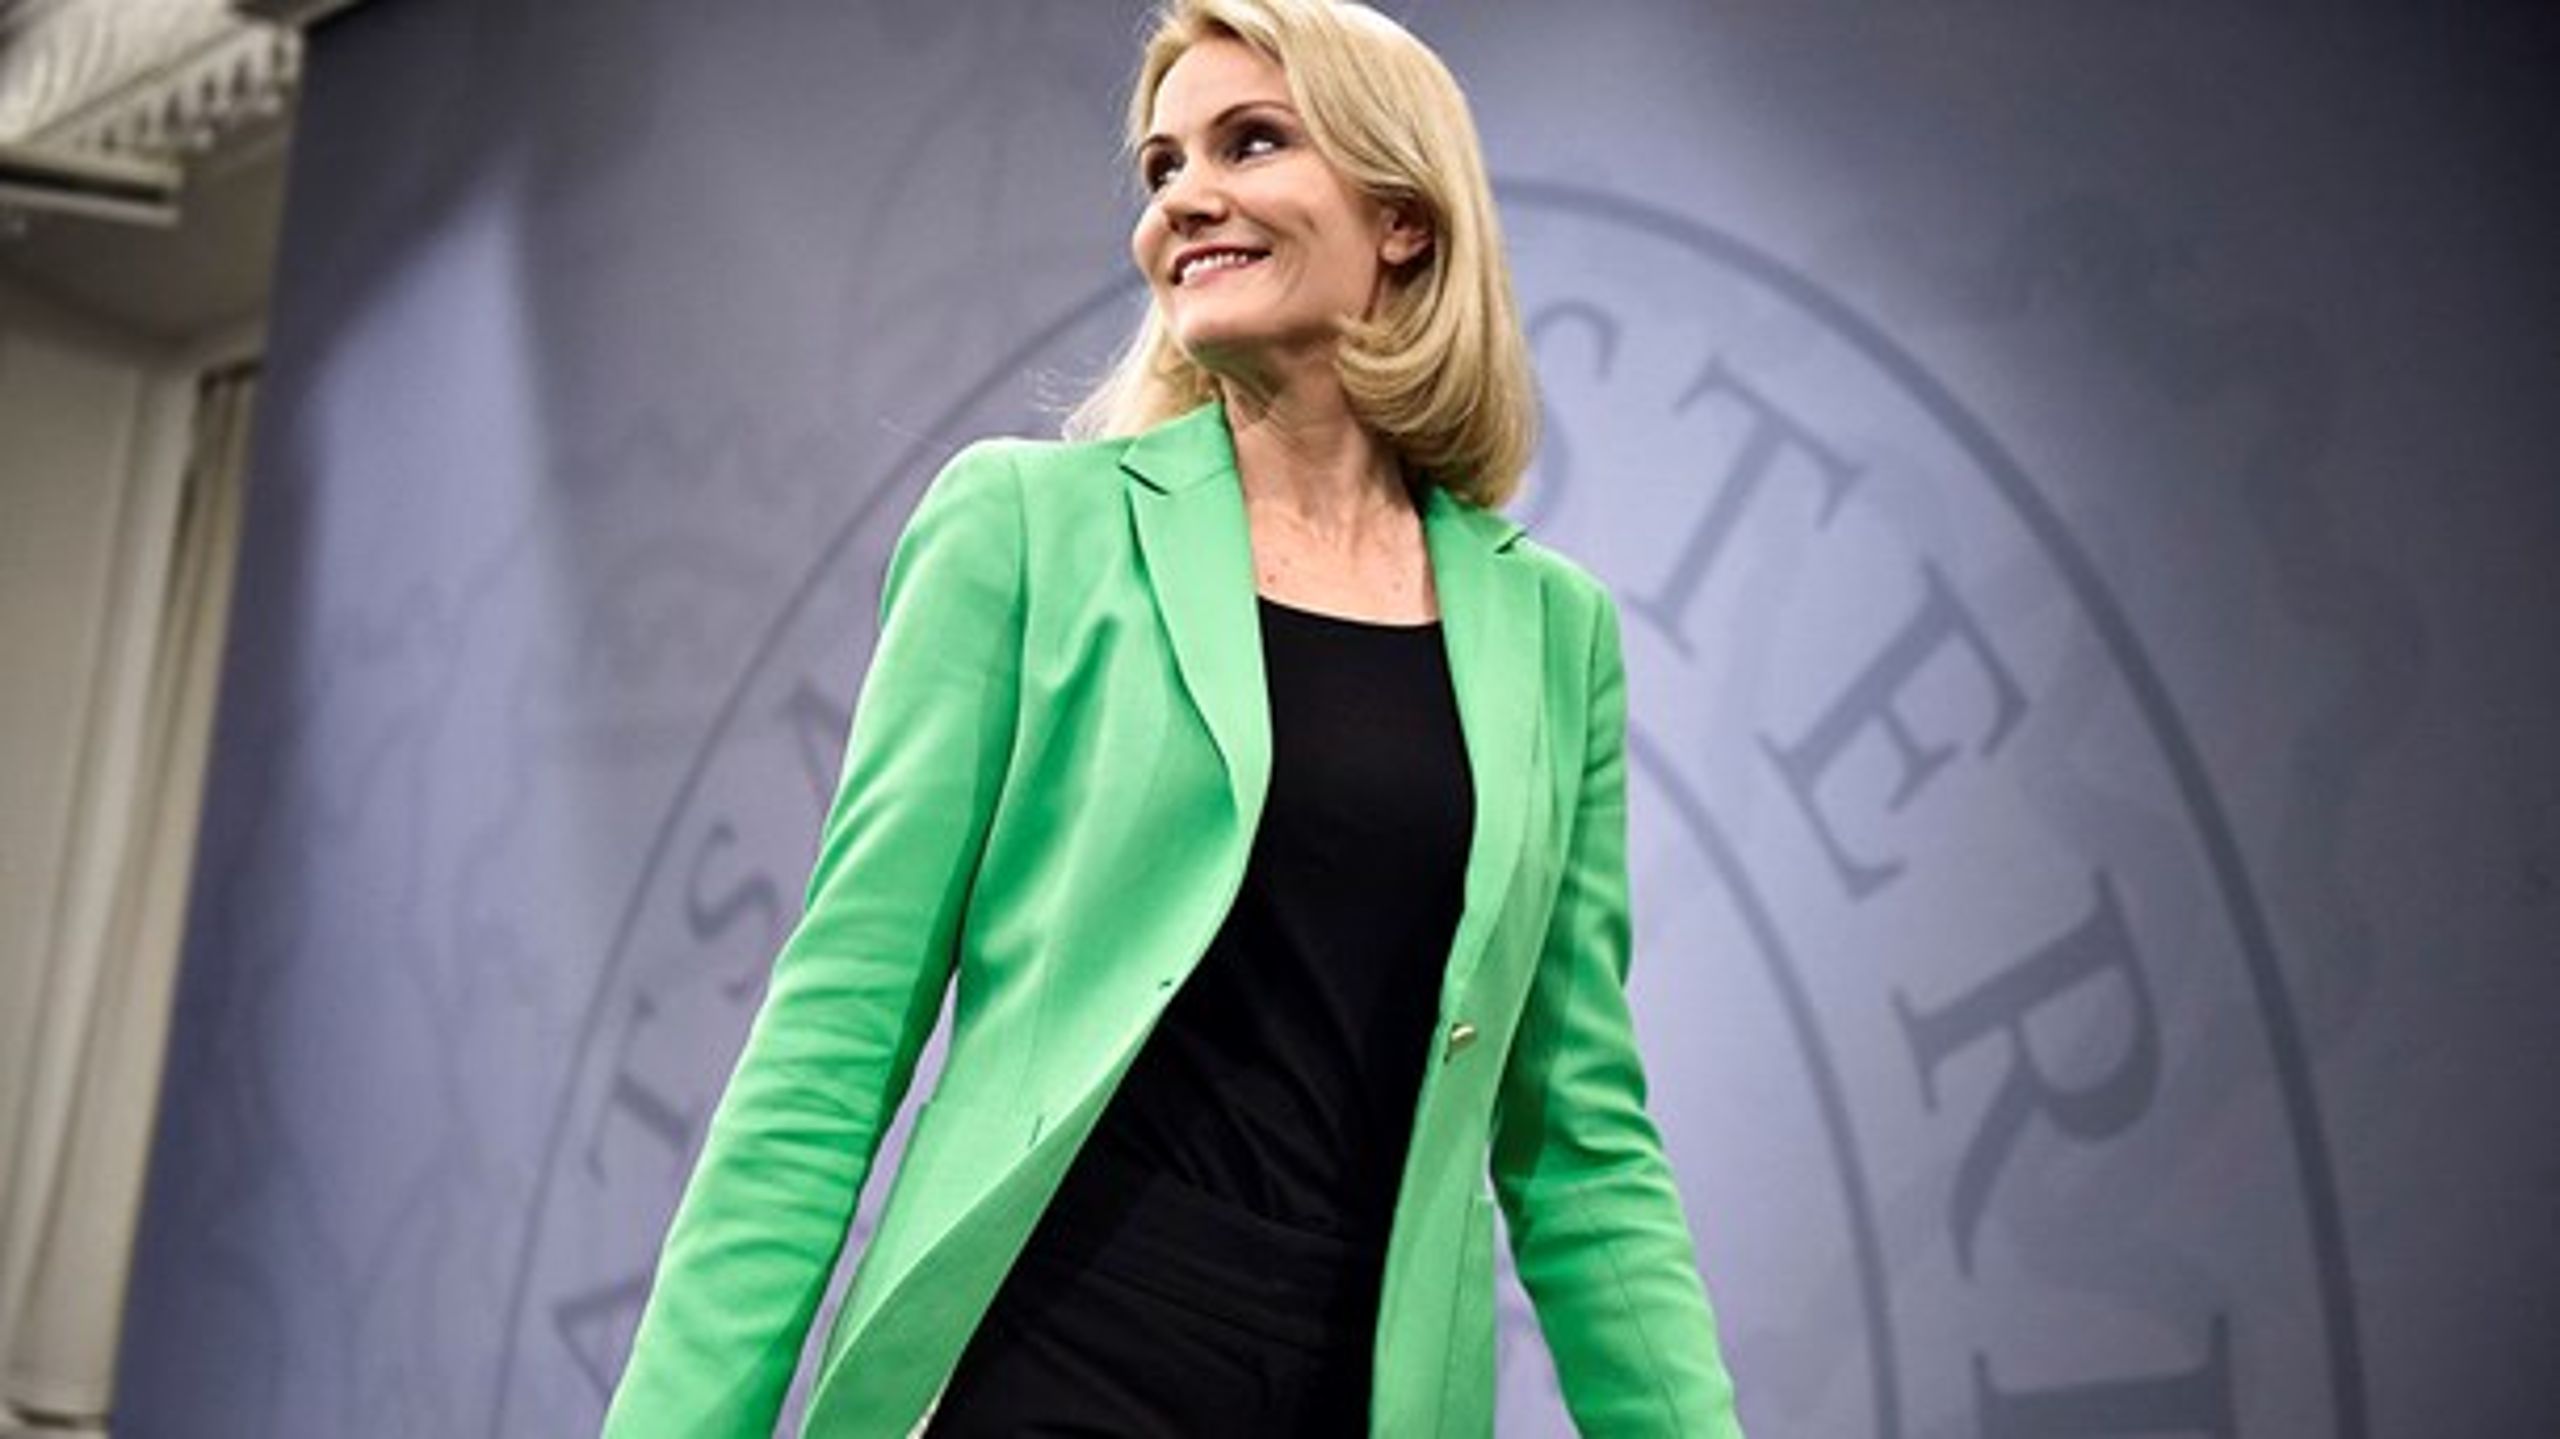 Danmarks tidligere statsminister Helle Thorning-Schmidt figurer på listen over&nbsp;verdens bedste ledere (Mathias Løvgreen Bojesen/ Scanpix).